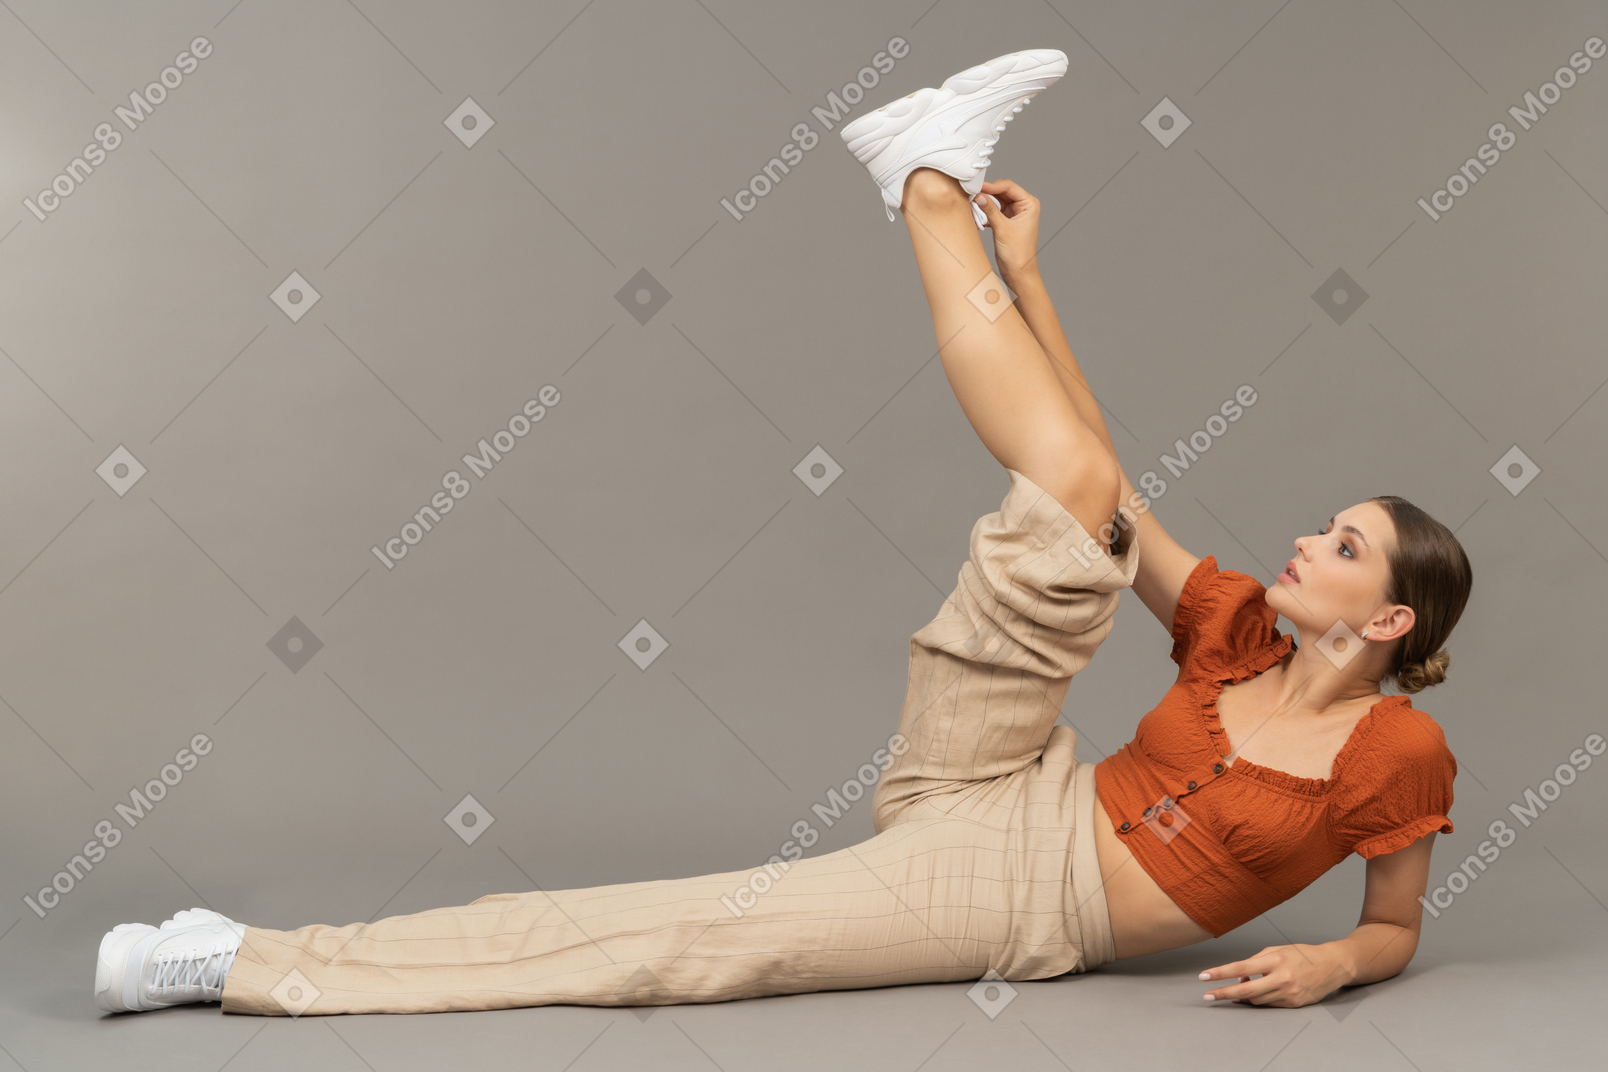 Jeune femme se couche et met sa jambe en l'air